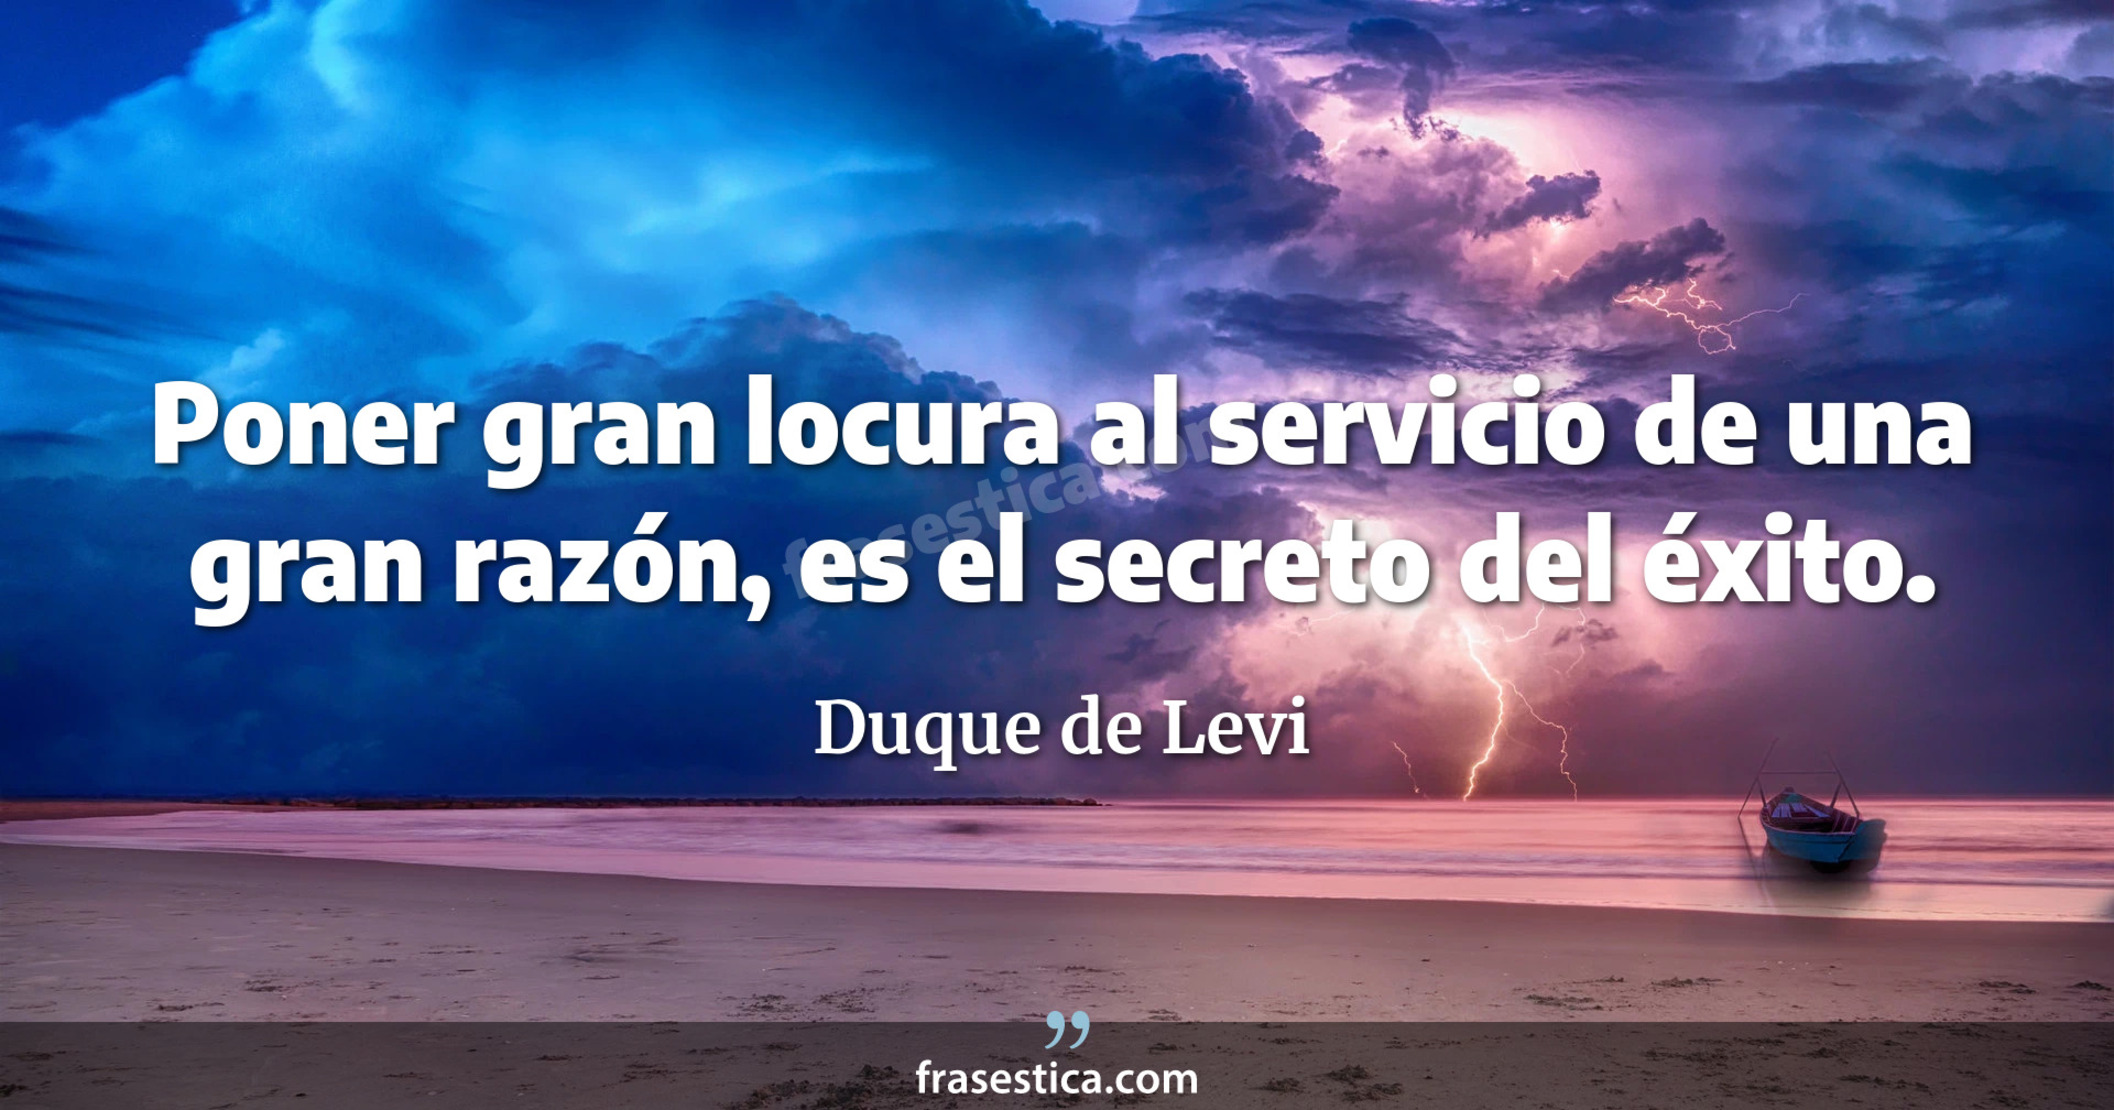 Poner gran locura al servicio de una gran razón, es el secreto del éxito. - Duque de Levi